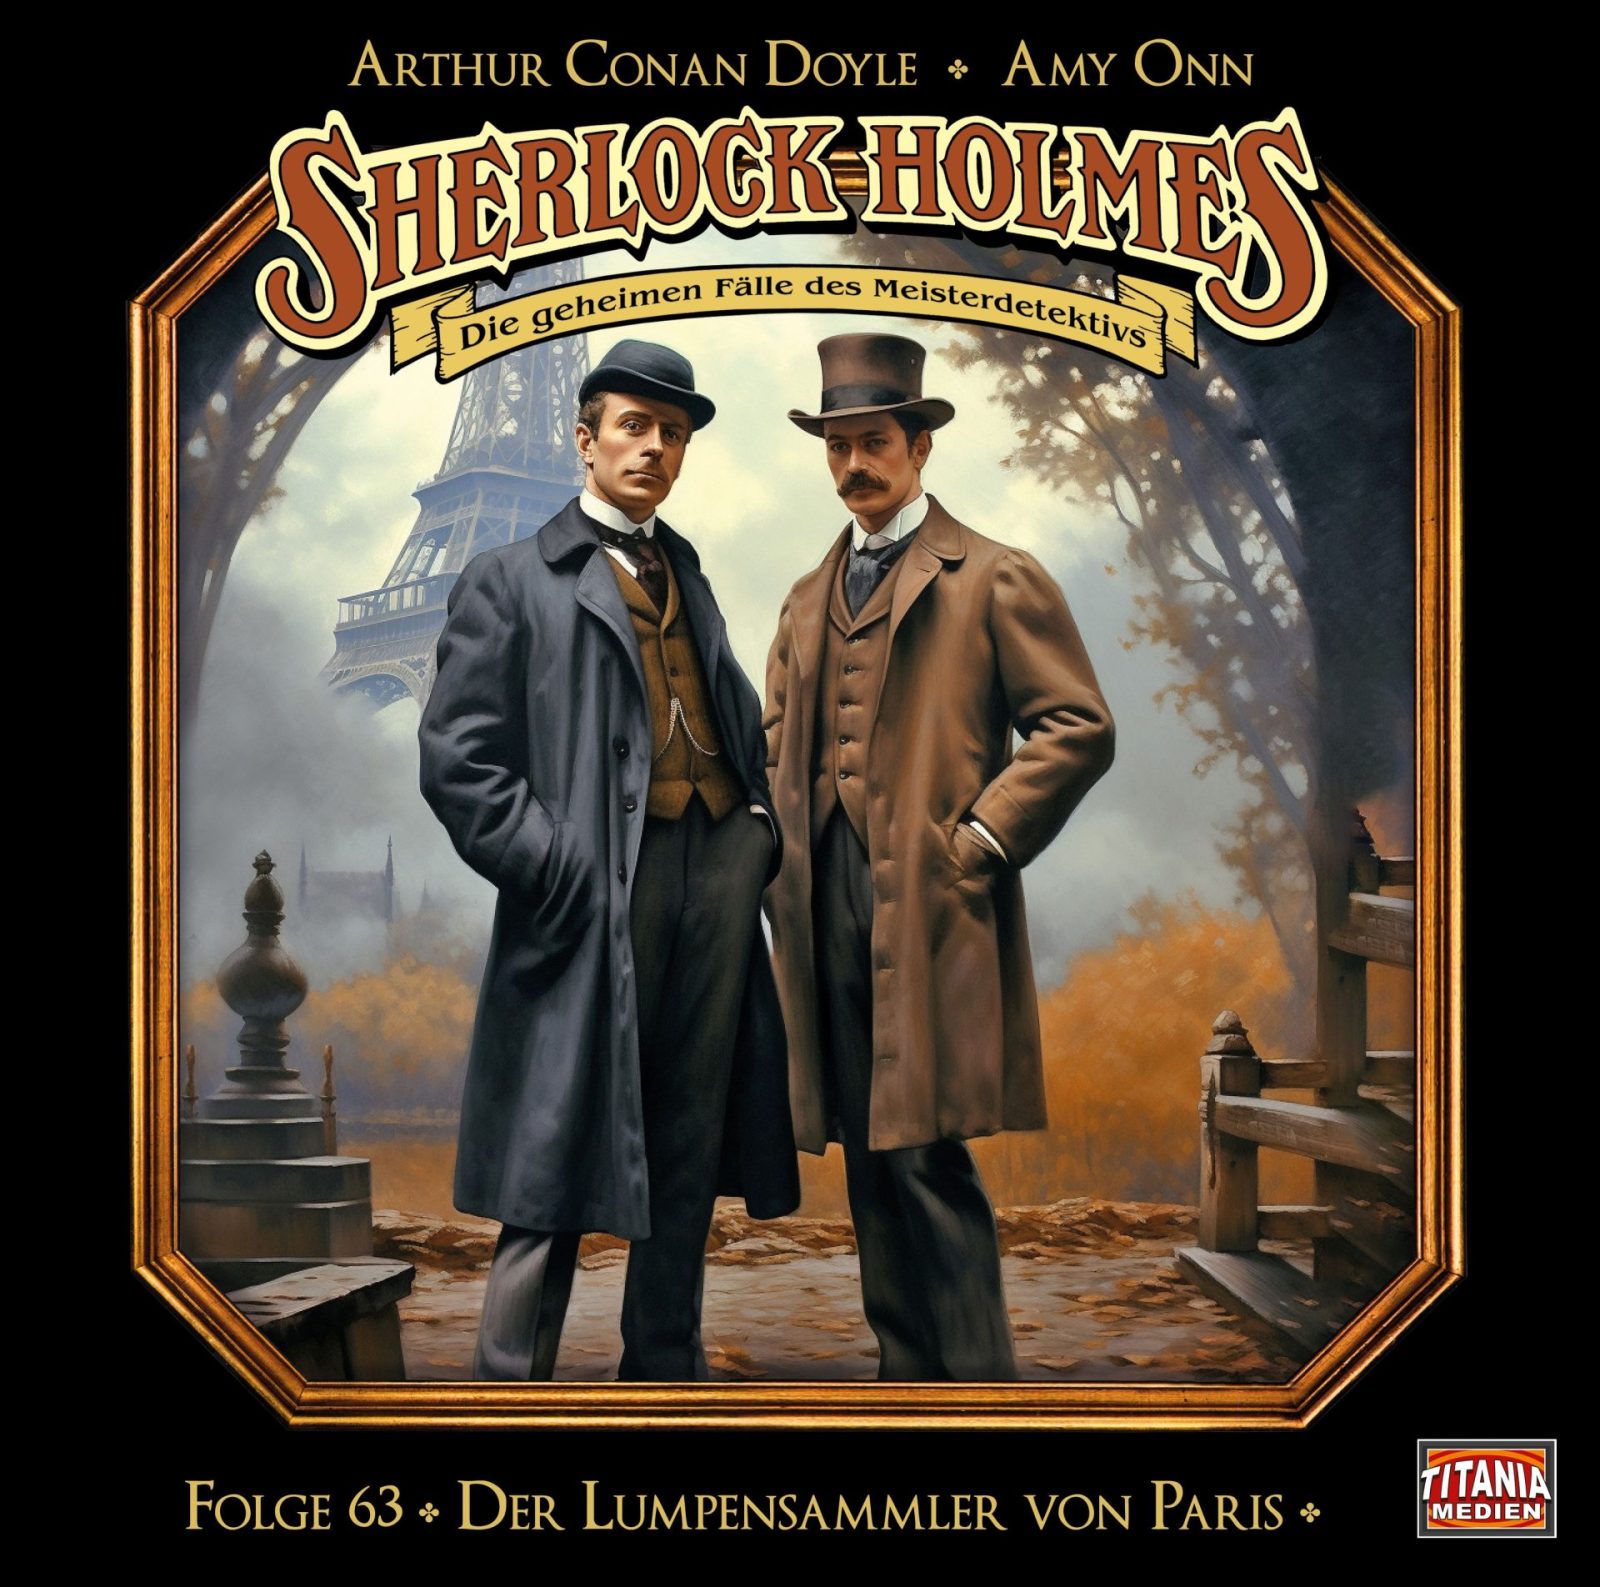 Sherlock Holmes – Die geheimen Fälle des Meisterdetektivs, Folge 63: Der Lumpensammler von Paris